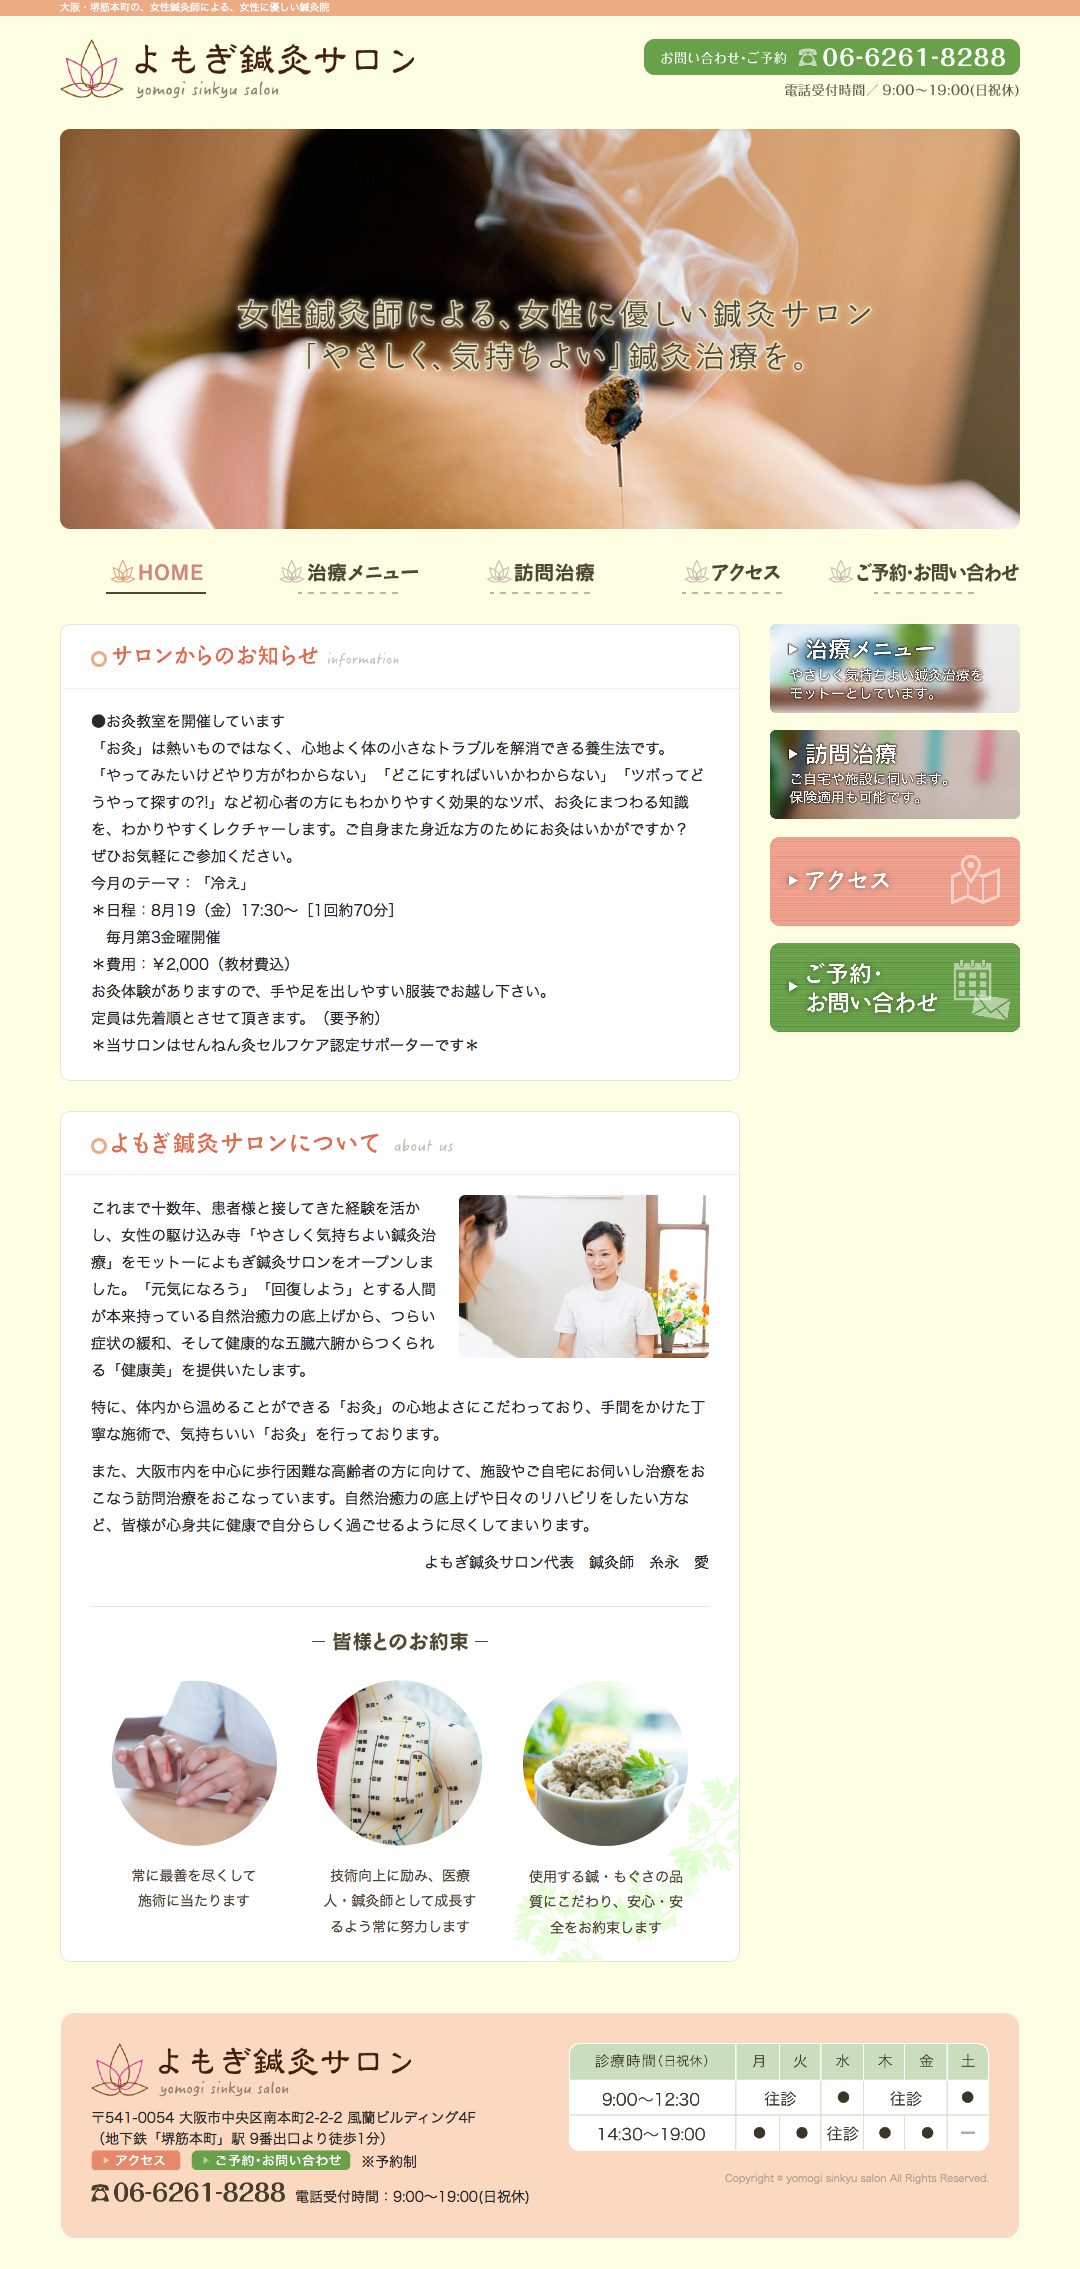 よもぎ鍼灸サロン様 official site